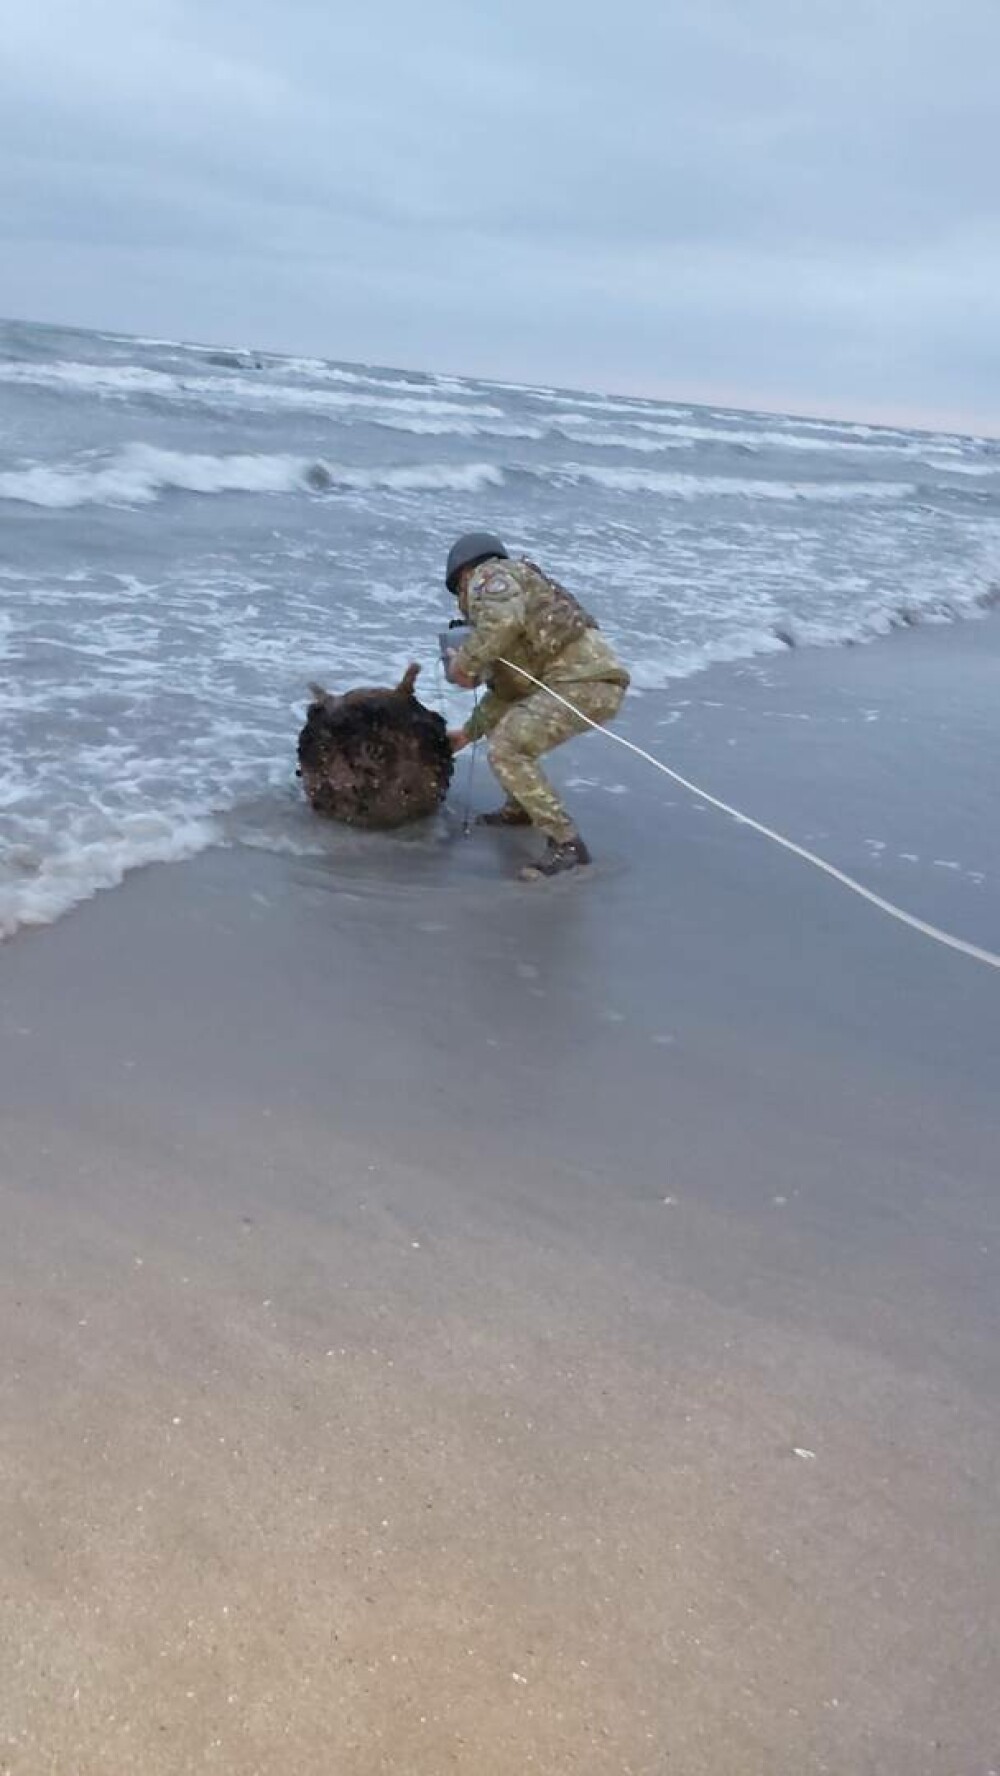 Mina marină descoperită de poliţiştii de frontieră pe plajă, în zona localităţii Sfântu Gheorghe, neutralizată - Imaginea 4